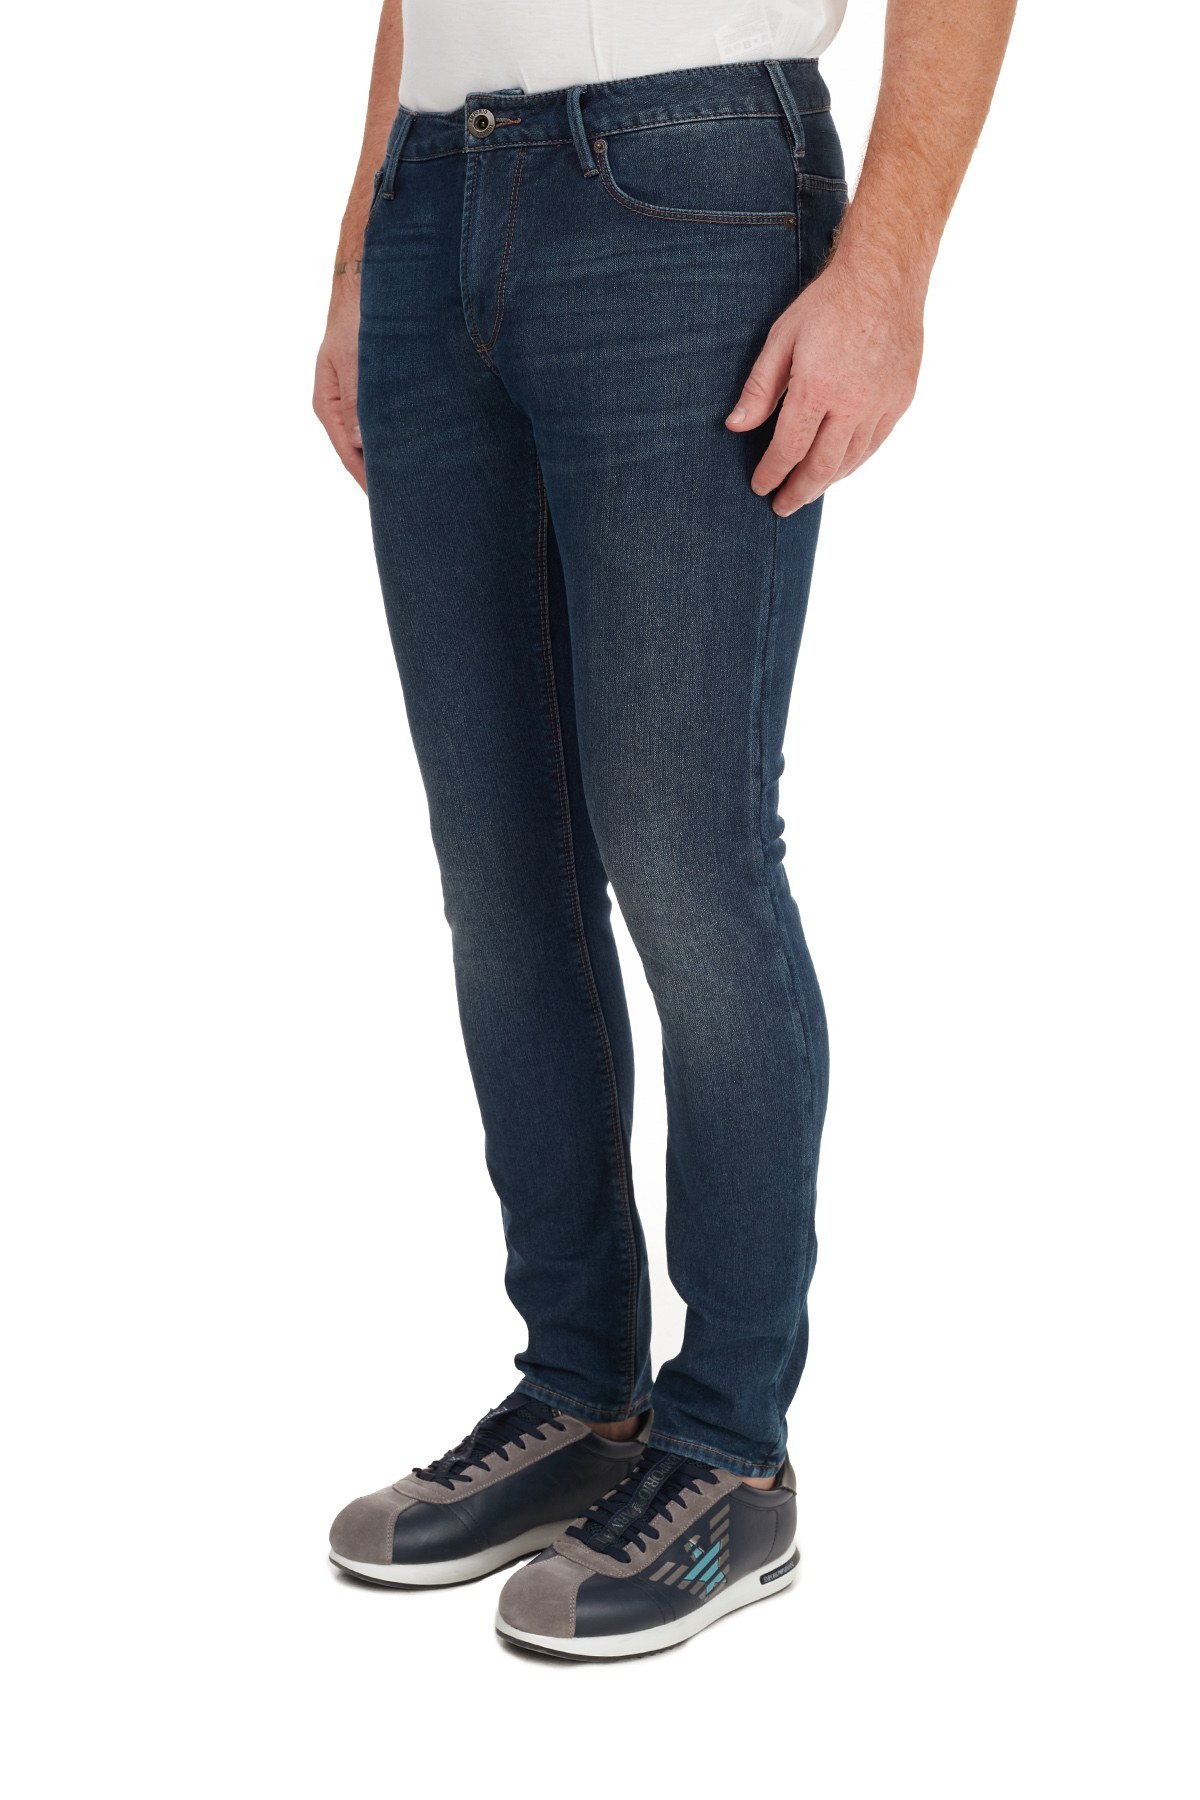 Emporio Armani Slim Fit Pamuklu J06 Jeans Erkek Kot Pantolon 6H1J06 1DPMZ 0942 MAVİ